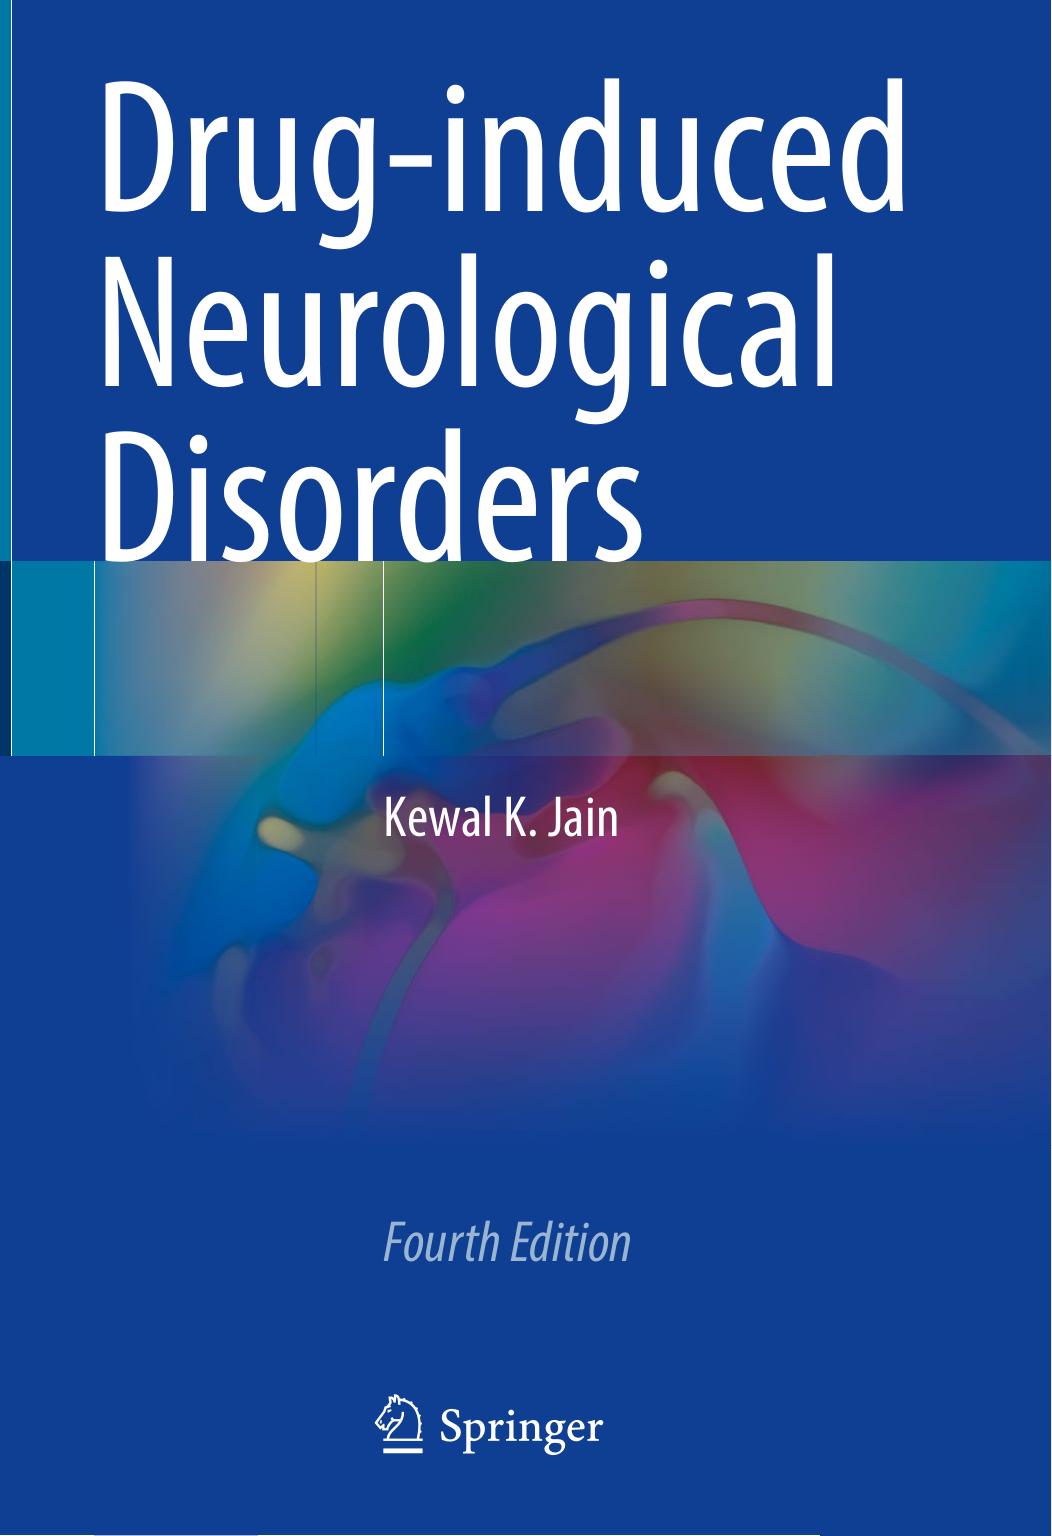 Drug-induced Neurological Disorders by Kewal K. Jain